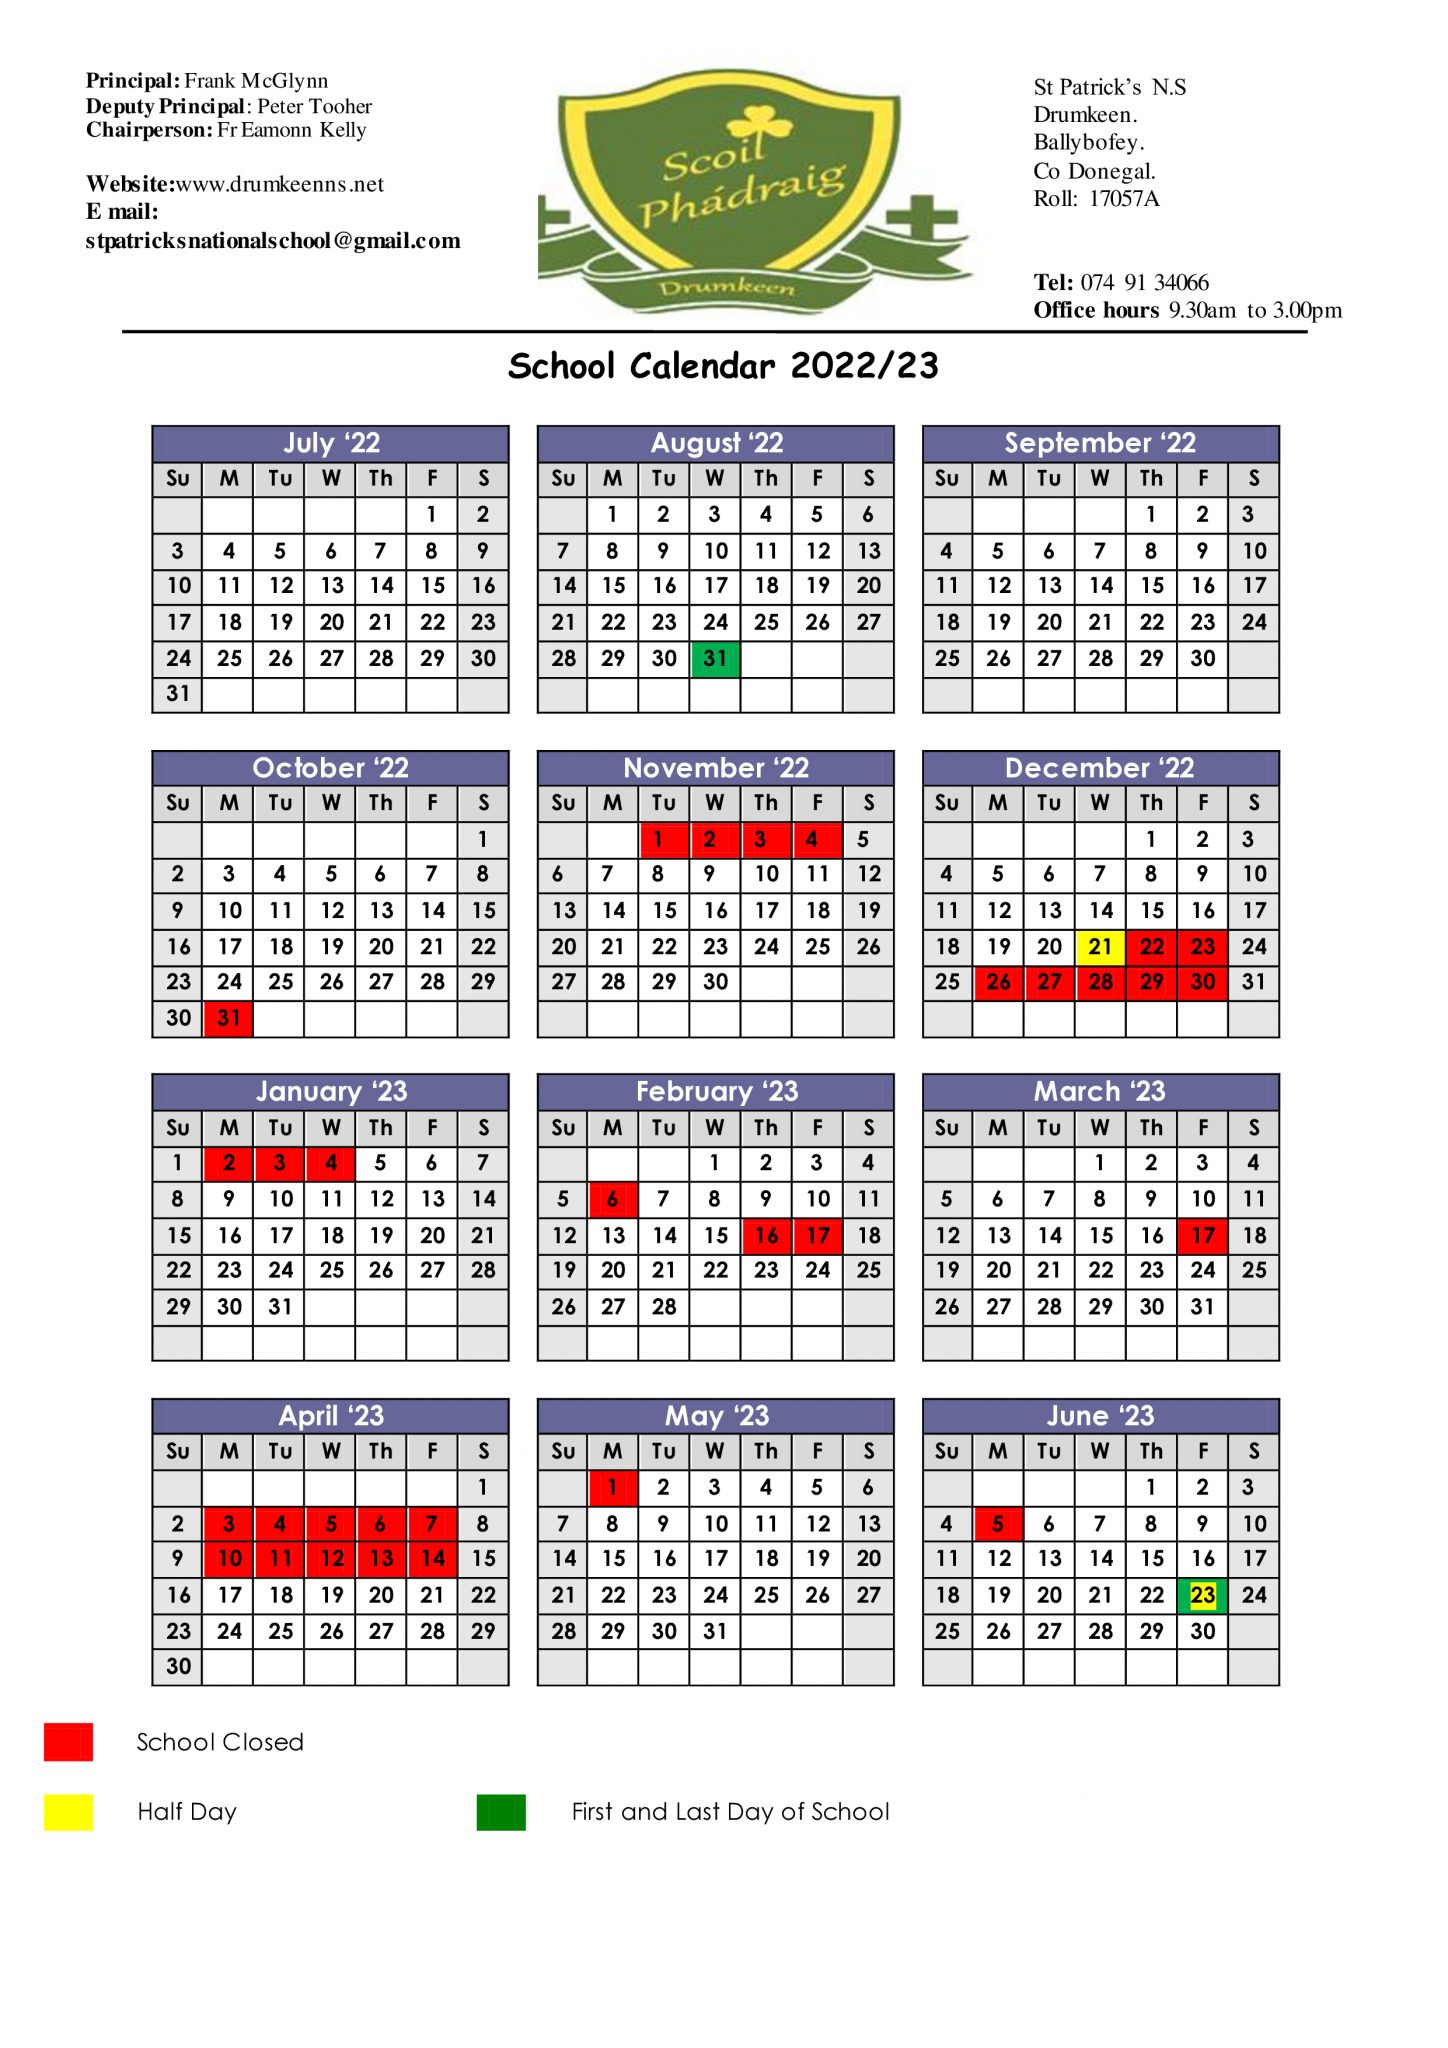 School Calendar 2022/2023. St.Patricks National School Drumkeen